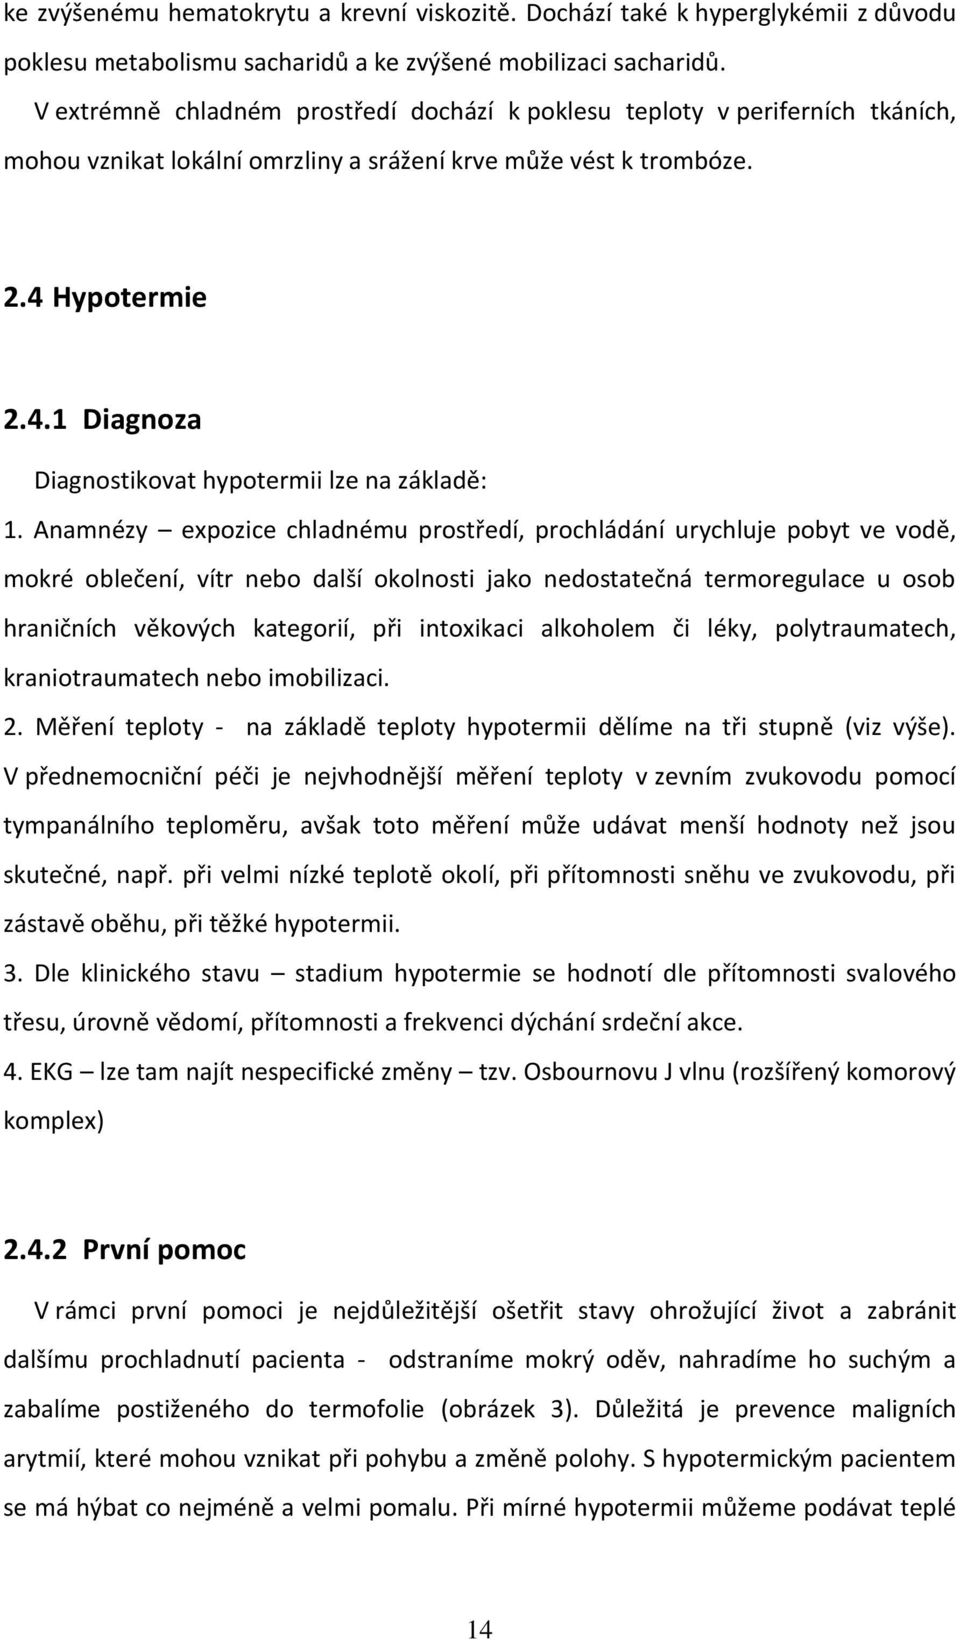 Hypotermie 2.4.1 Diagnoza Diagnostikovat hypotermii lze na základě: 1.